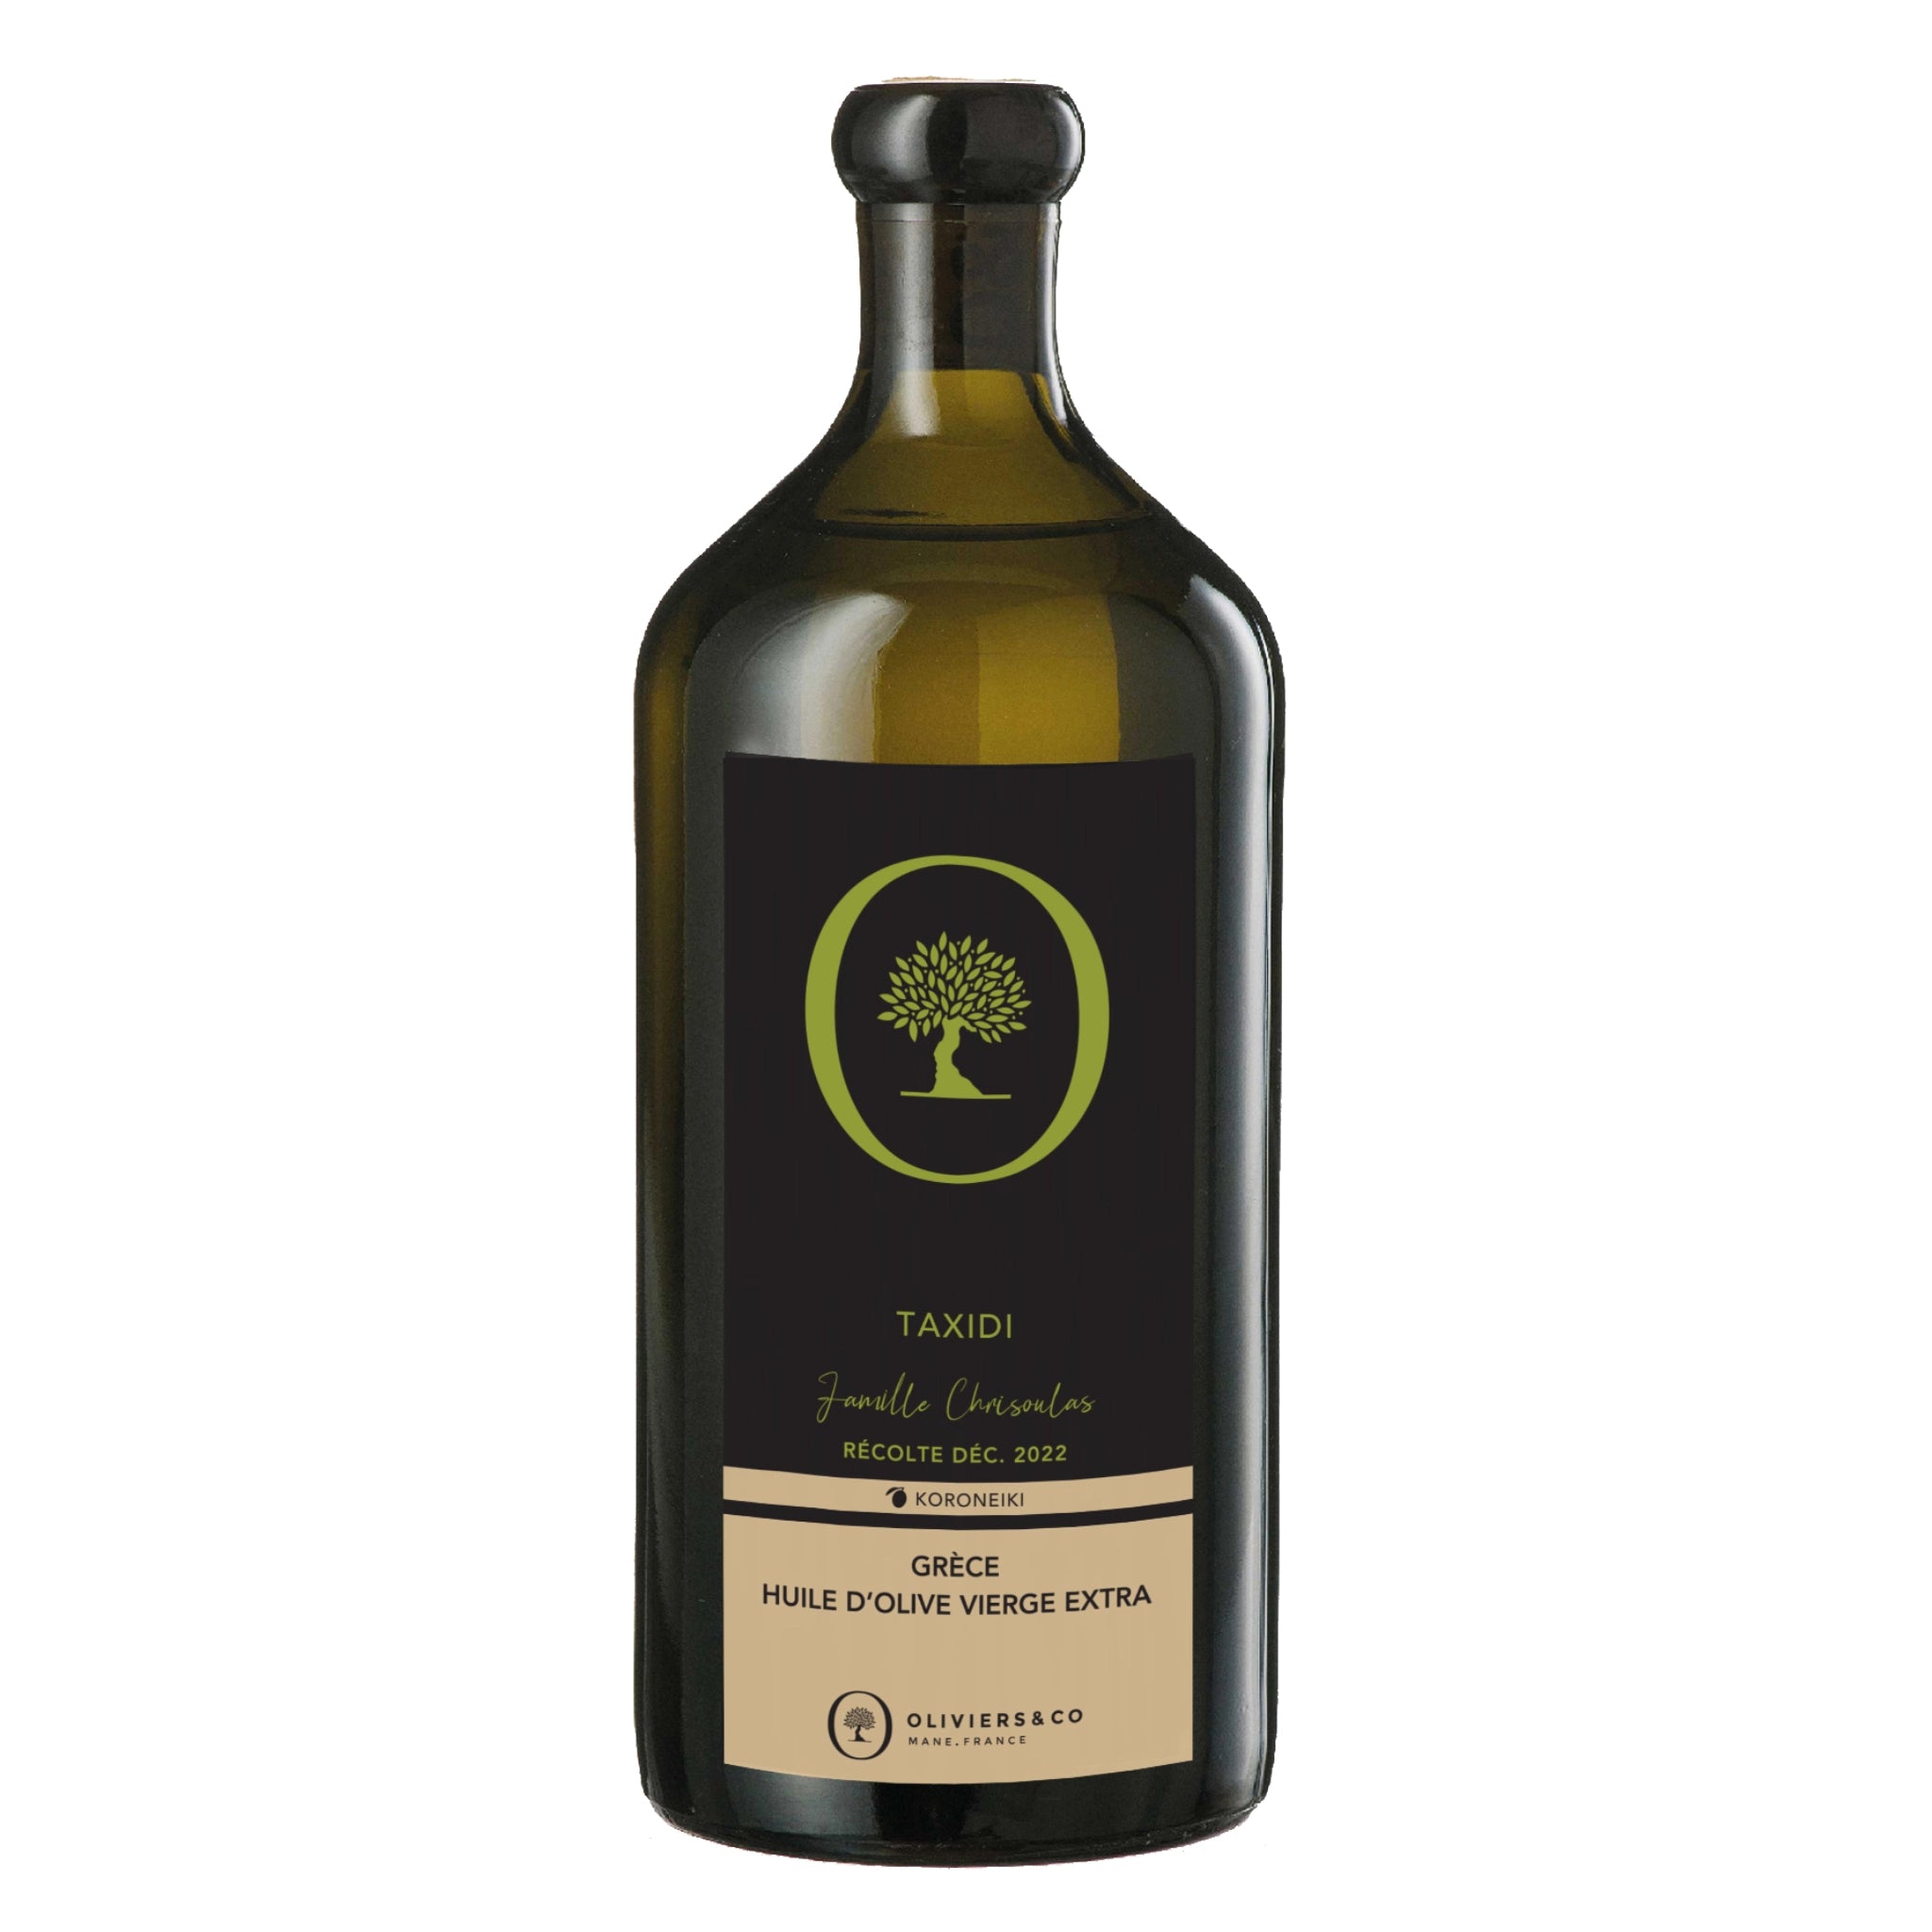 Taxidi græsk ekstra jomfru olivenolie 500 ml, Oliviers & Co